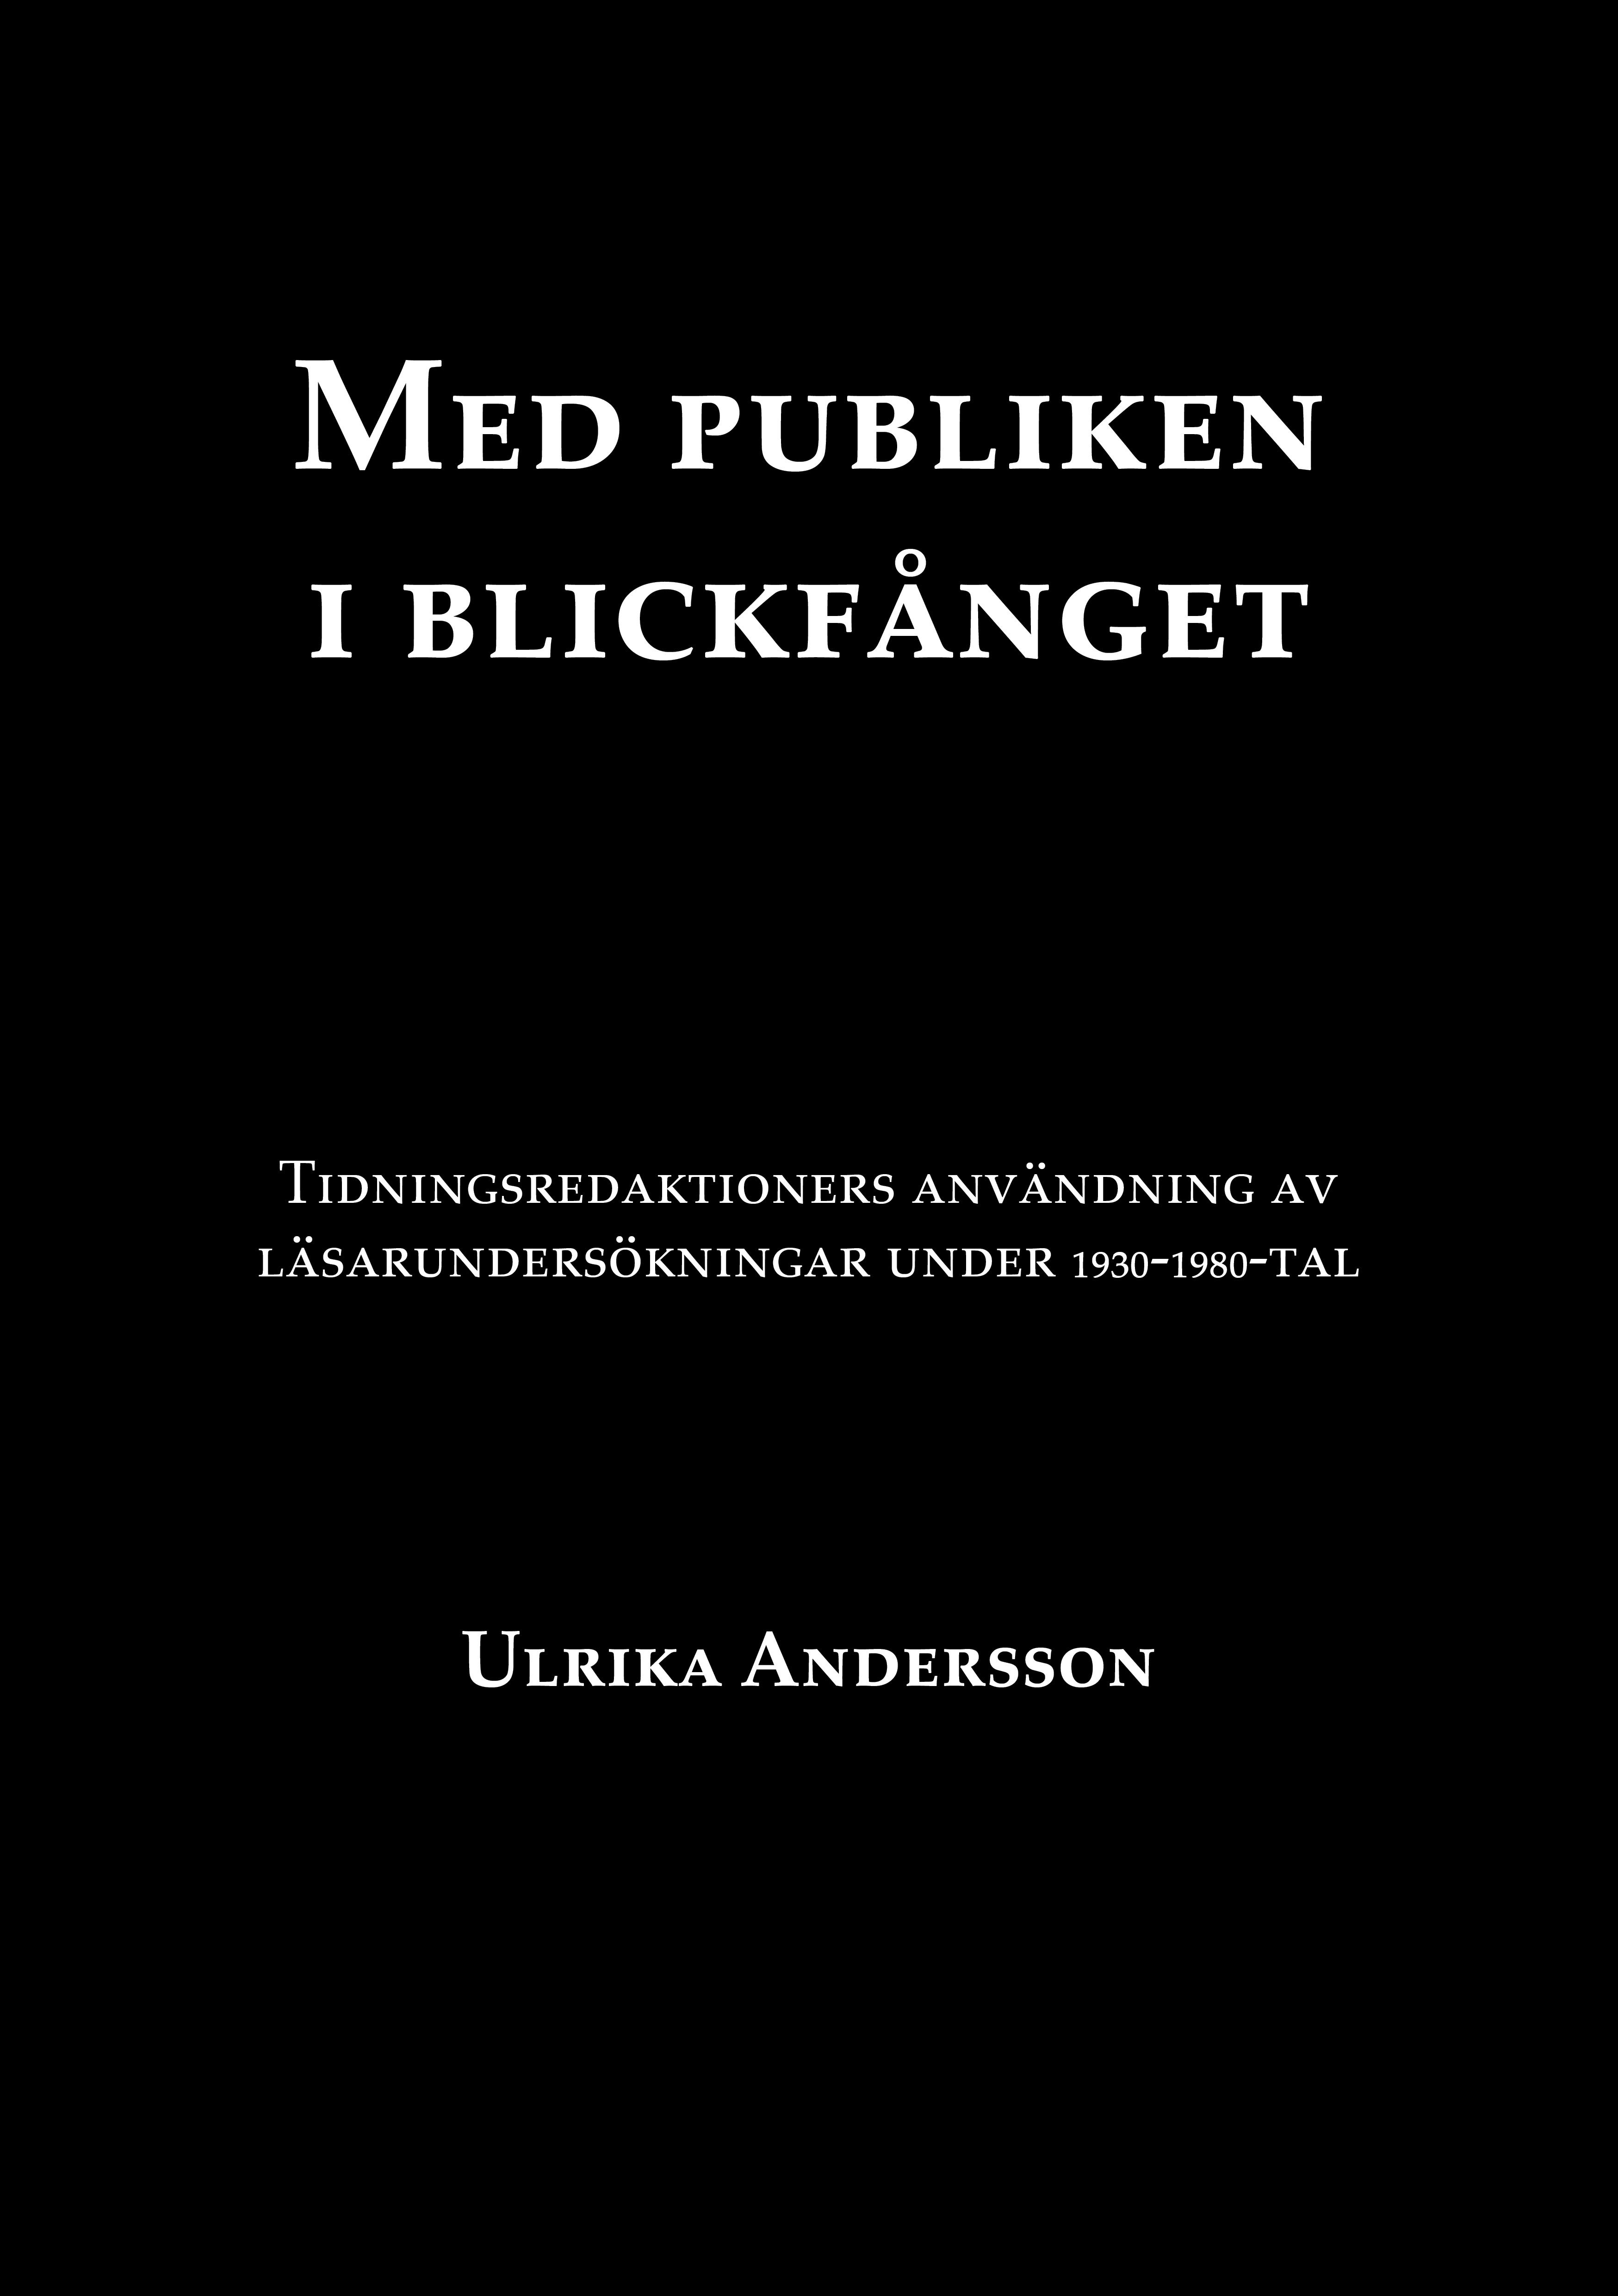 Med publiken i blickfånget, eBook by Ulrika Andersson